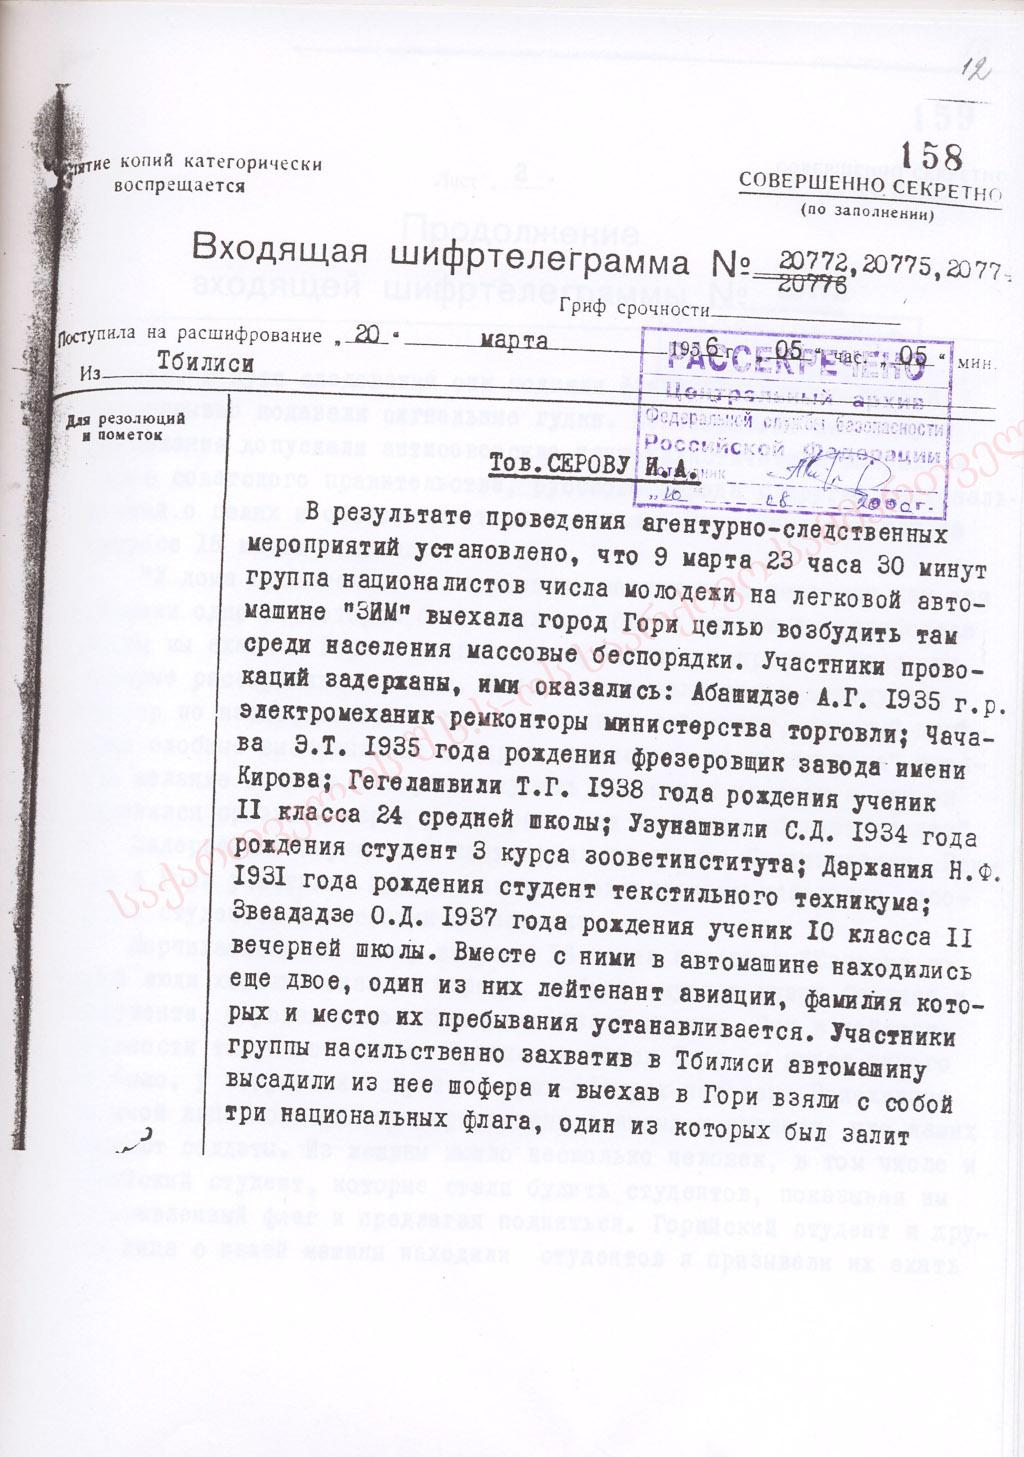 Входящие шифрованные телеграммы, рассекреченные ФСБ Российской Федерации, о событиях 5-9 марта 1956 г. Шифртелеграмма № 20772 от 20 марта 1956 г.